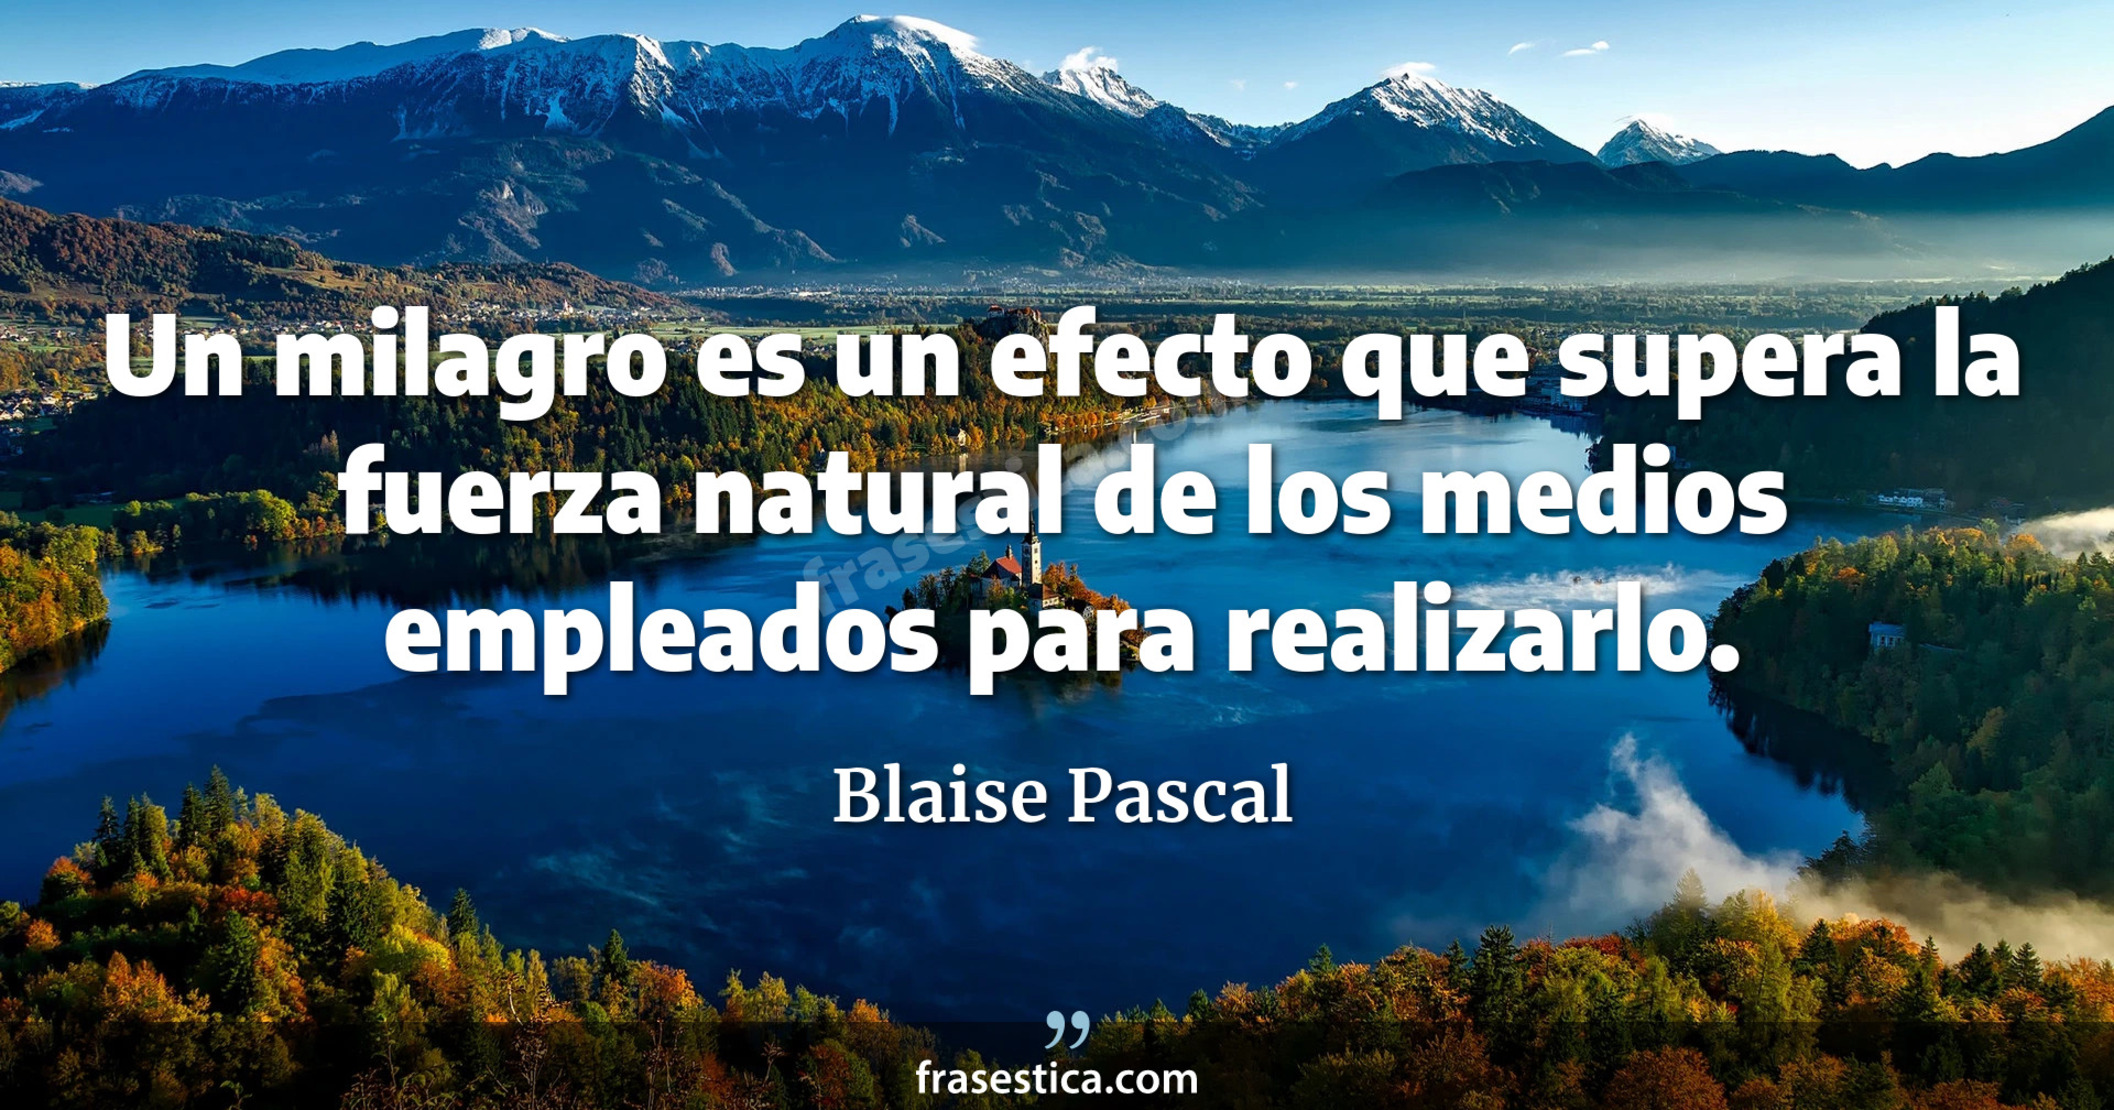 Un milagro es un efecto que supera la fuerza natural de los medios empleados para realizarlo. - Blaise Pascal